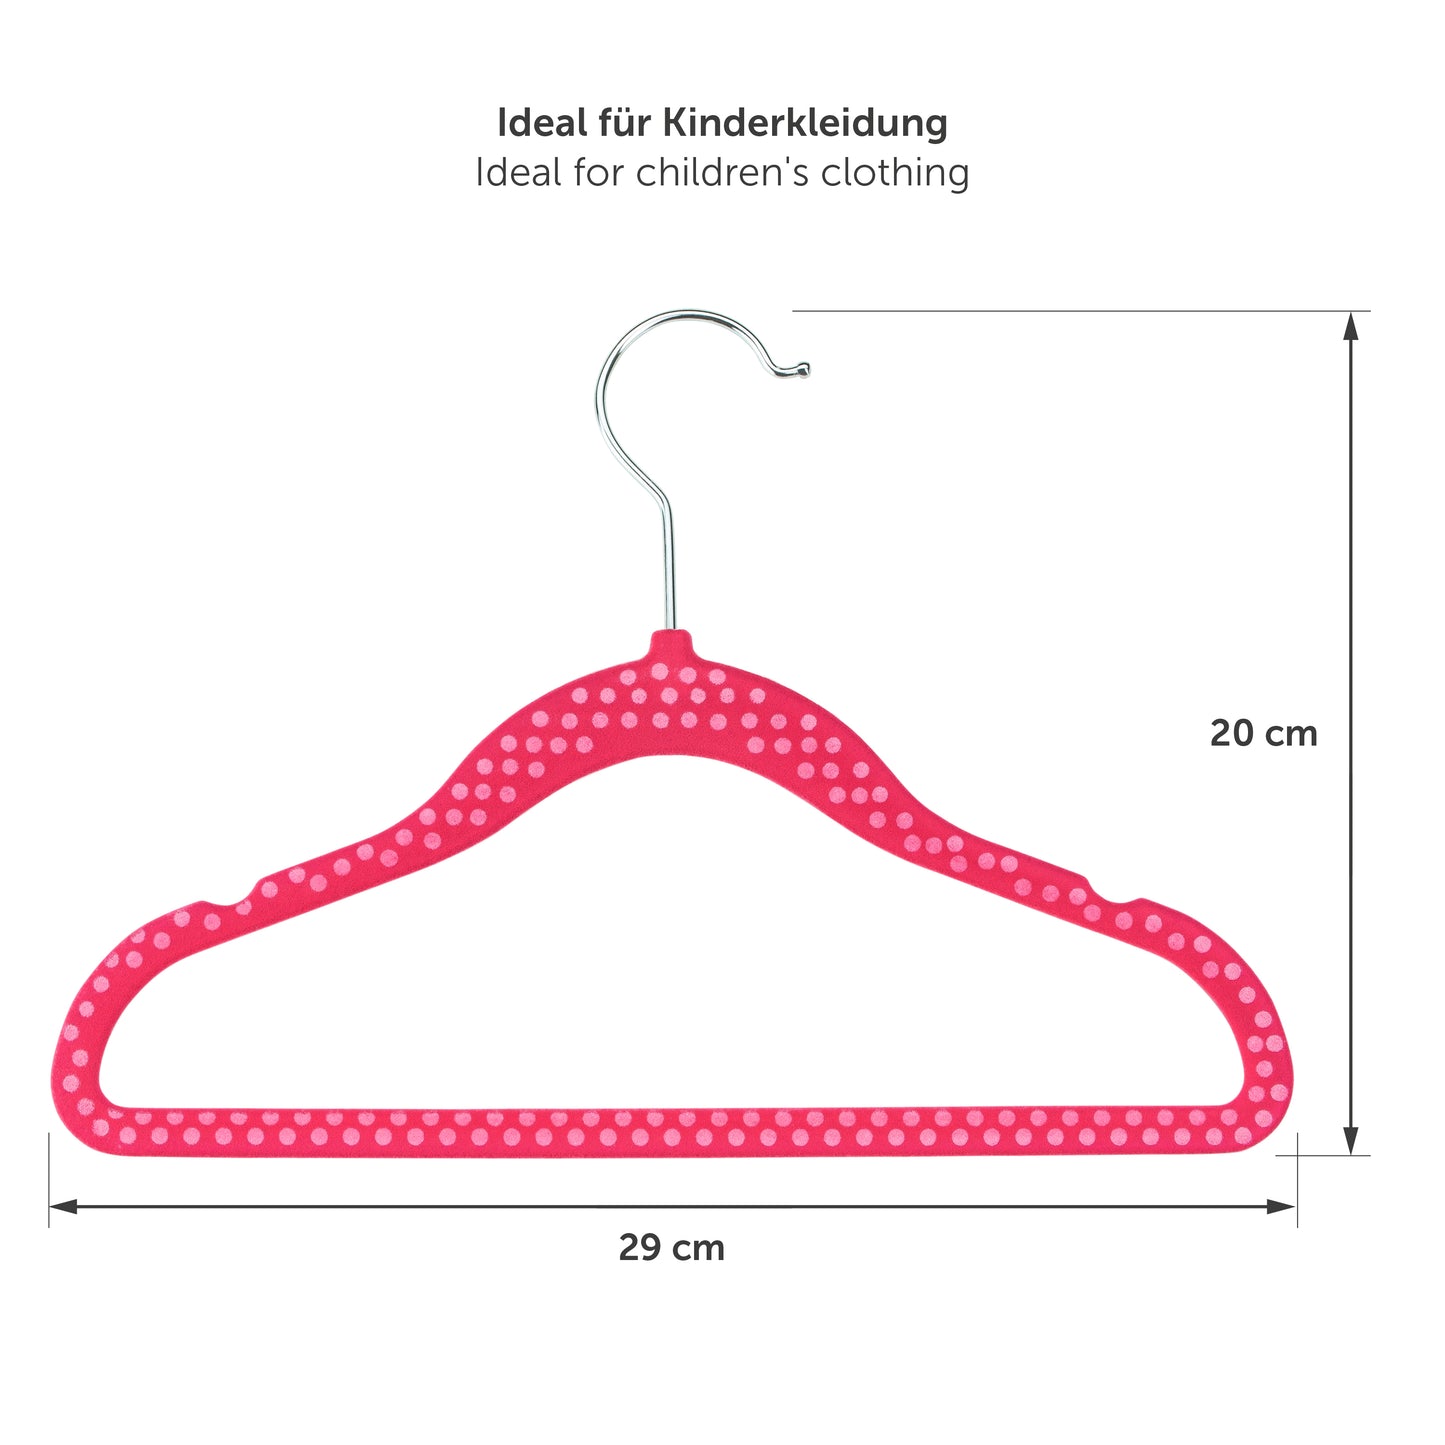 Maßangaben eines pinken Kinderkleiderbügels mit Abmessungen von 29 cm in der Breite und 20 cm in der Höhe